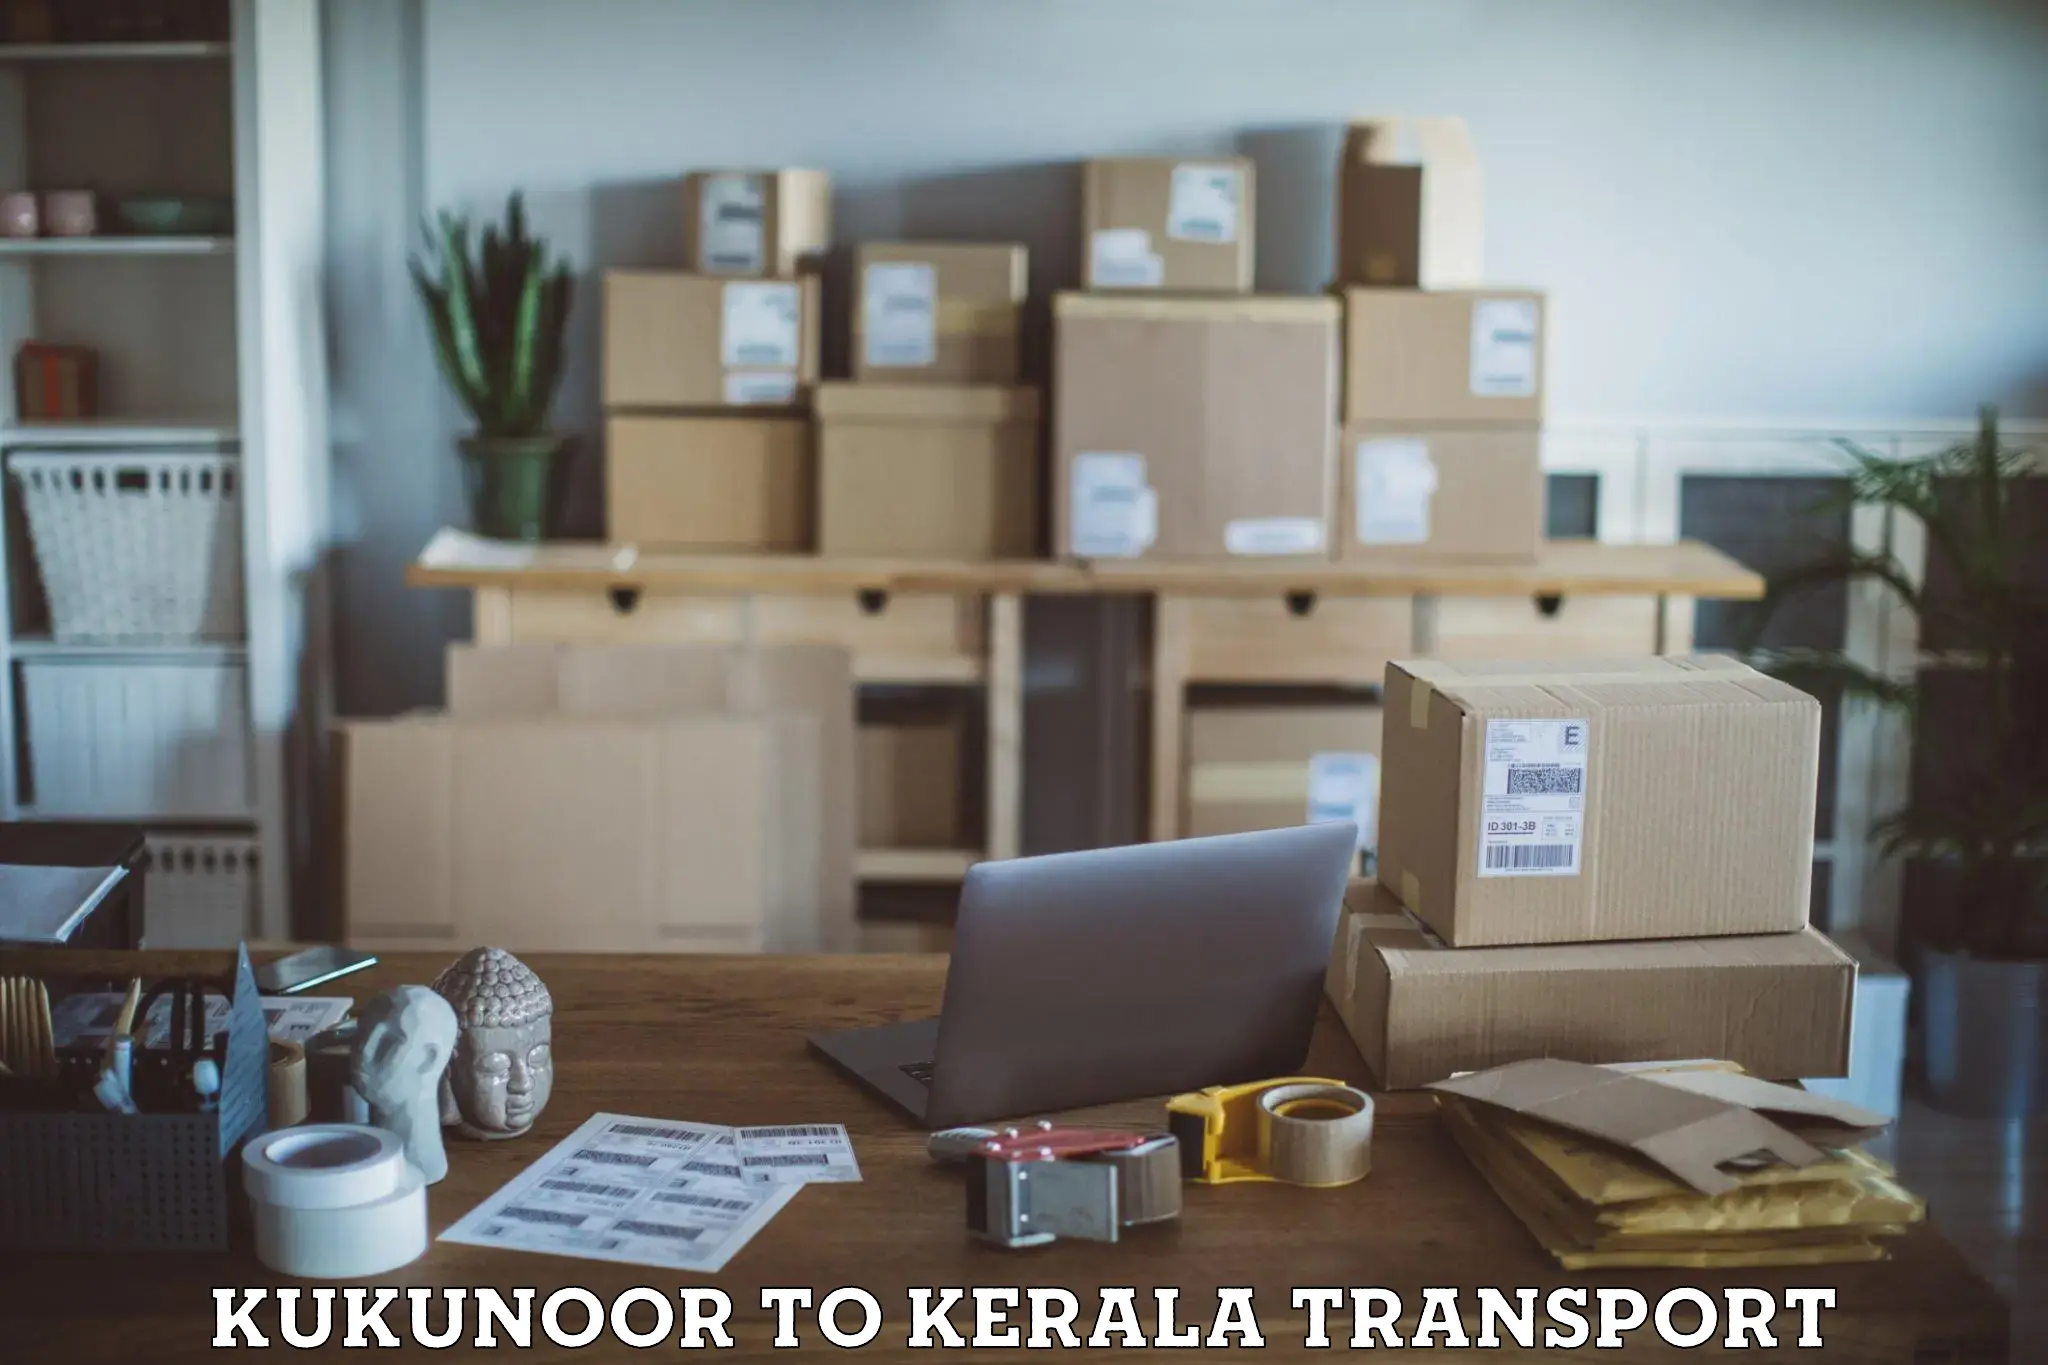 Delivery service Kukunoor to Kozhikode